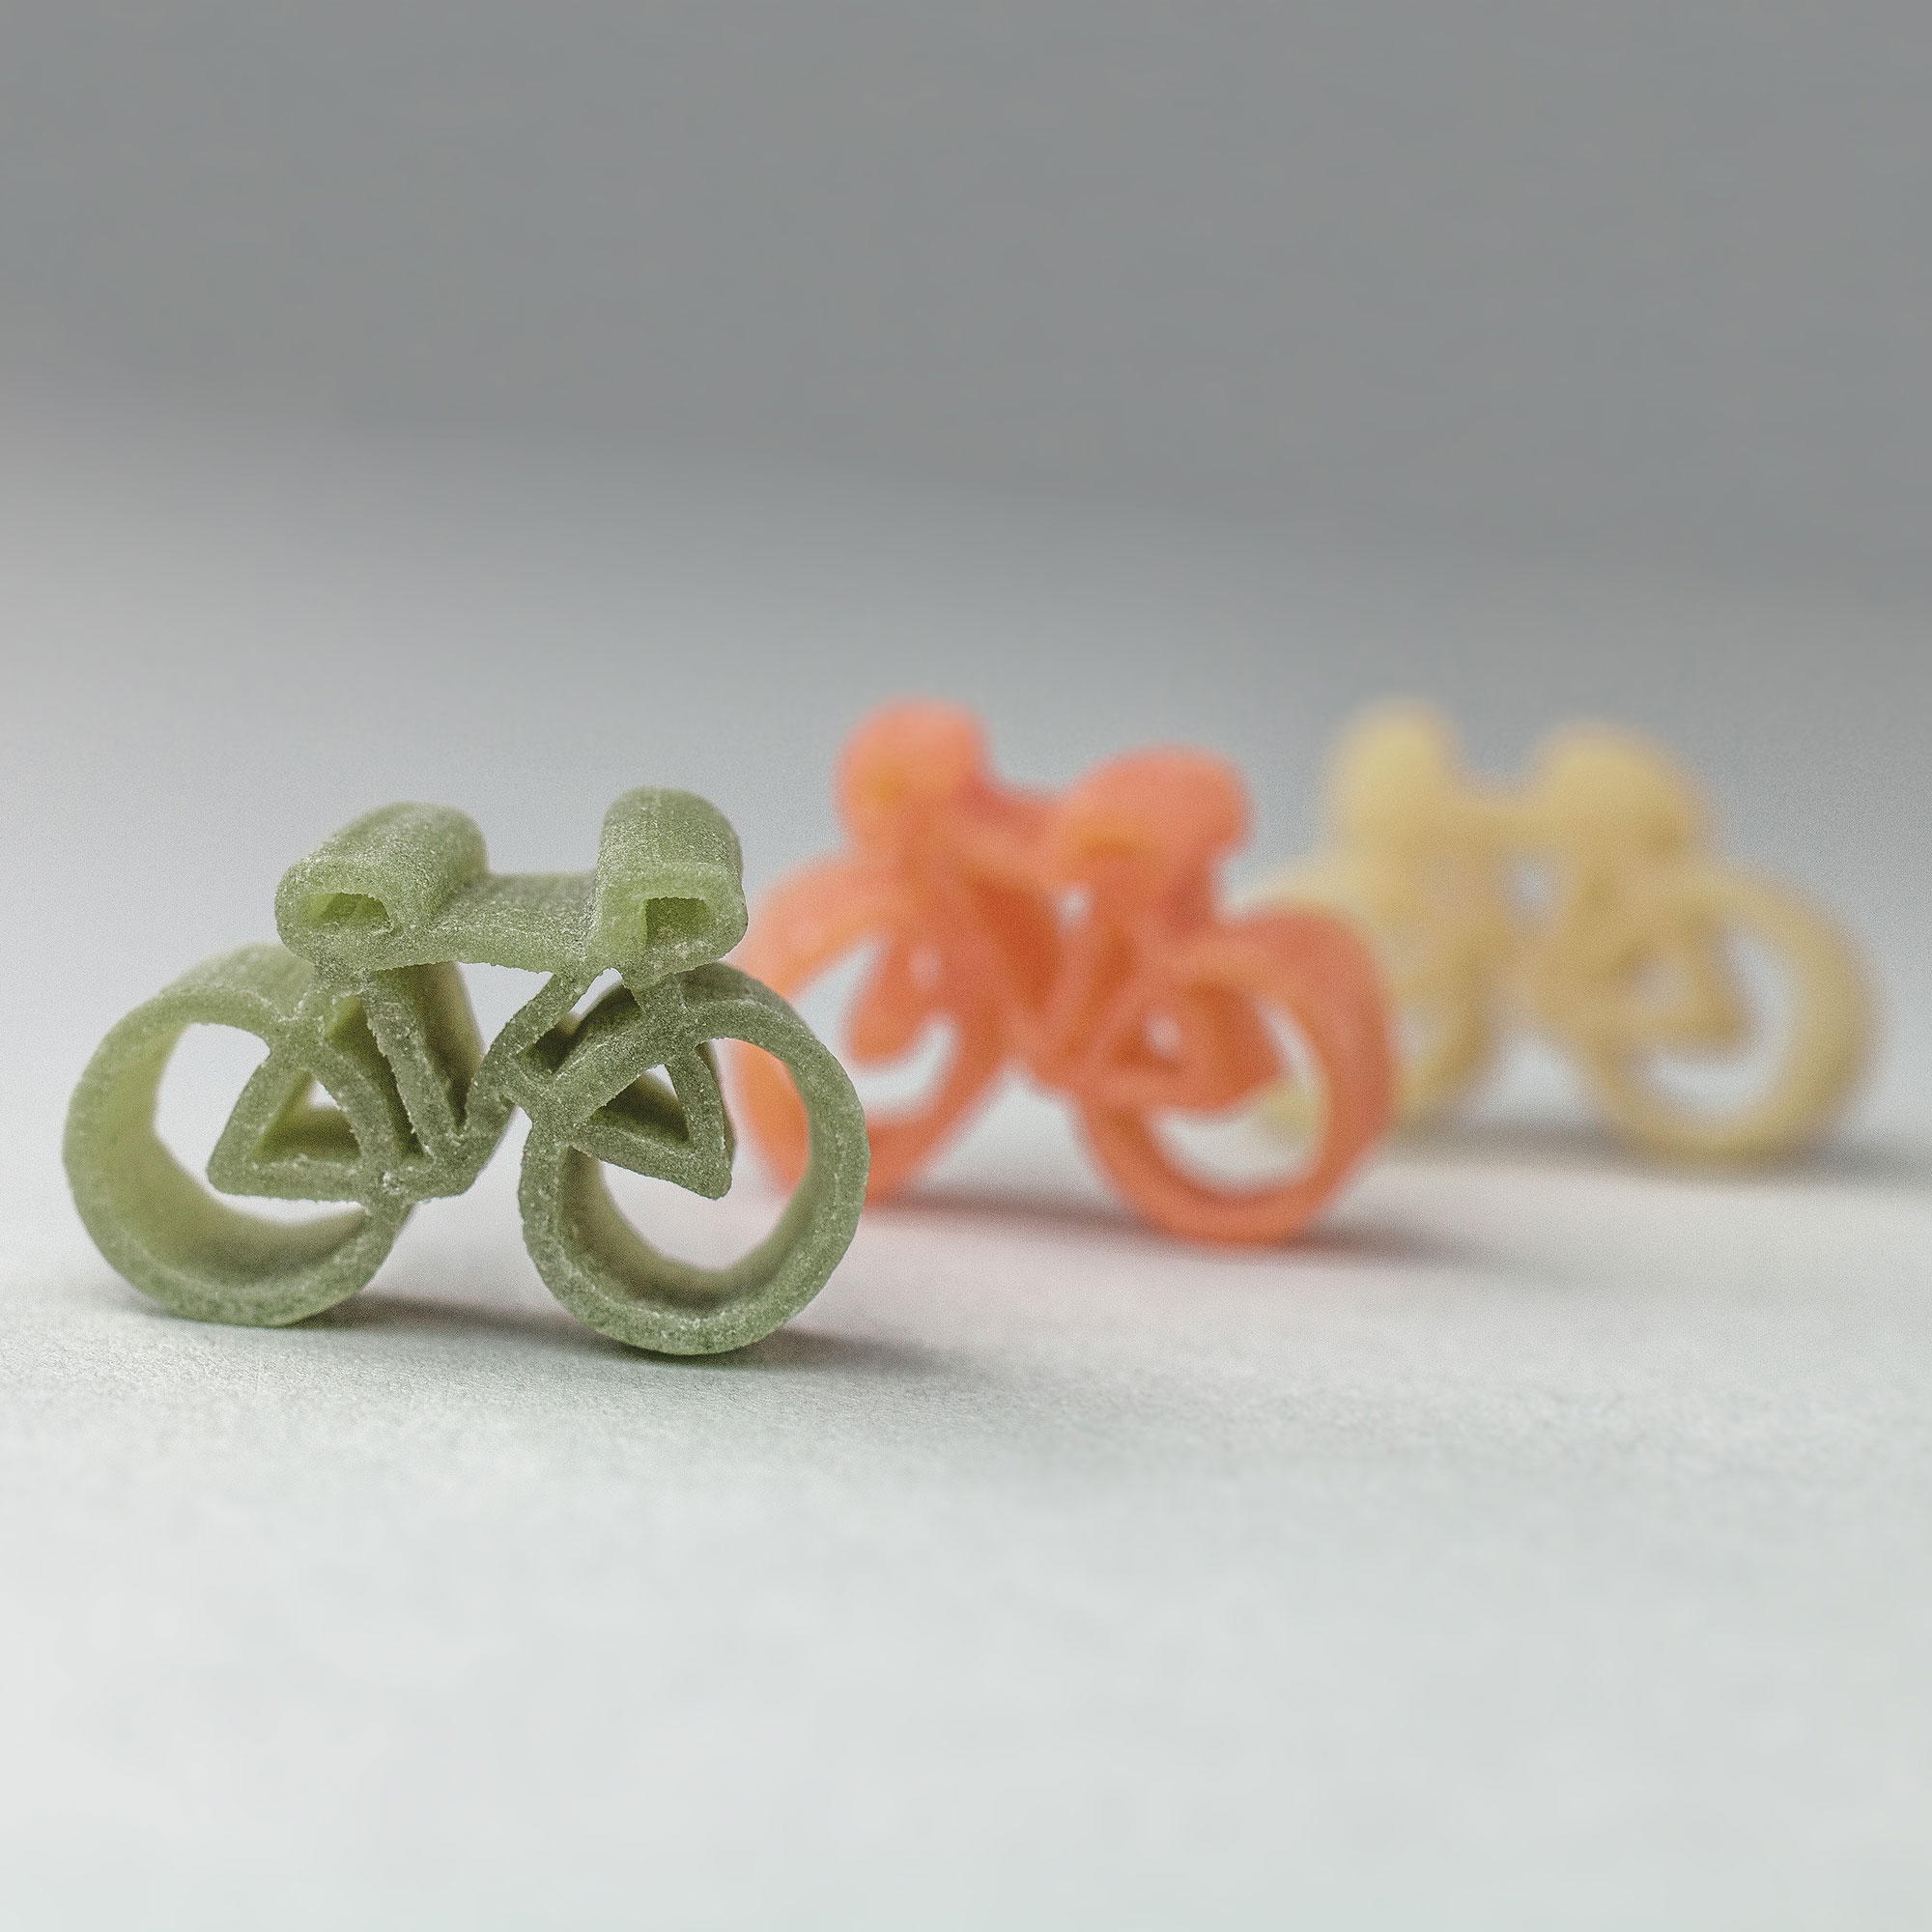 Fahrrad Pasta - besondere Nudeln als Geschenk für Fahrradfahrer, bunte Hartweizennudeln als Fahrräder - 250 Gramm, witzige Radnudeln in 3 Farben